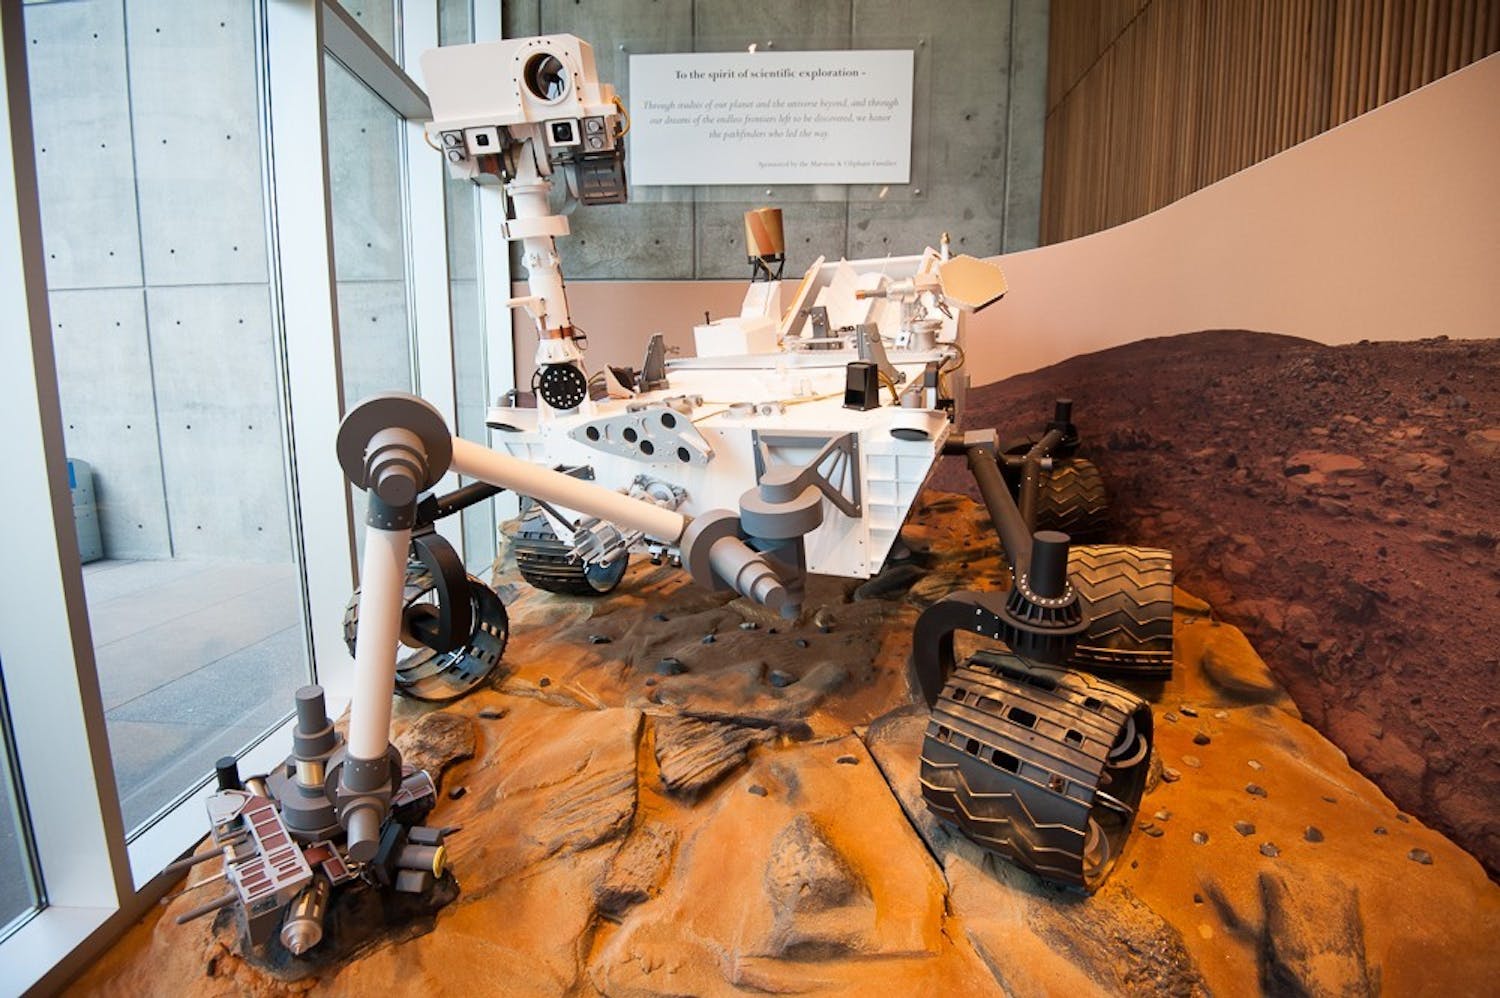 20150611-curiosity-rover-007-jpg.jpg